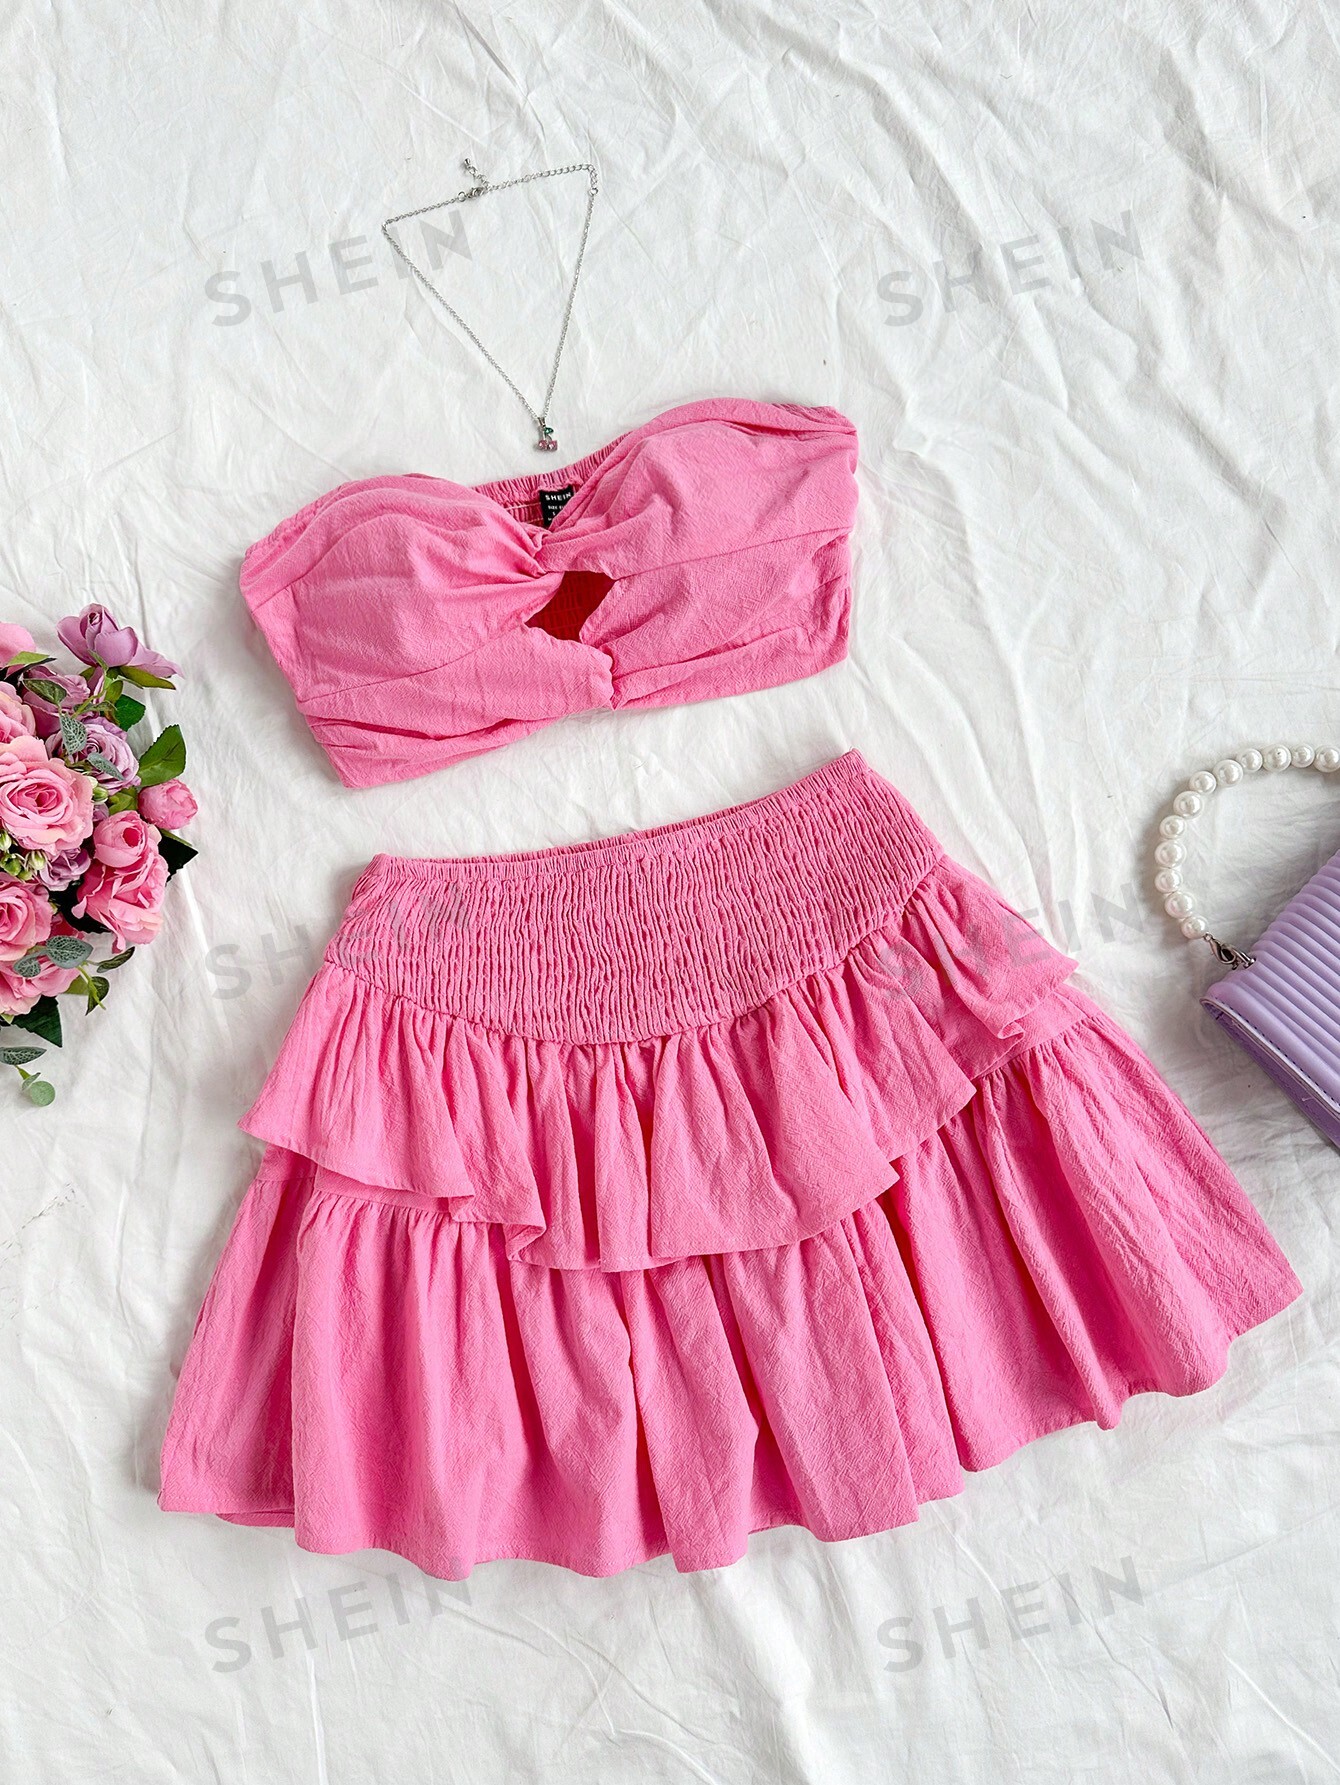 SHEIN WYWH Топ-бандо с закручивающейся передней частью и юбка-трапеция с высокой талией, розовый